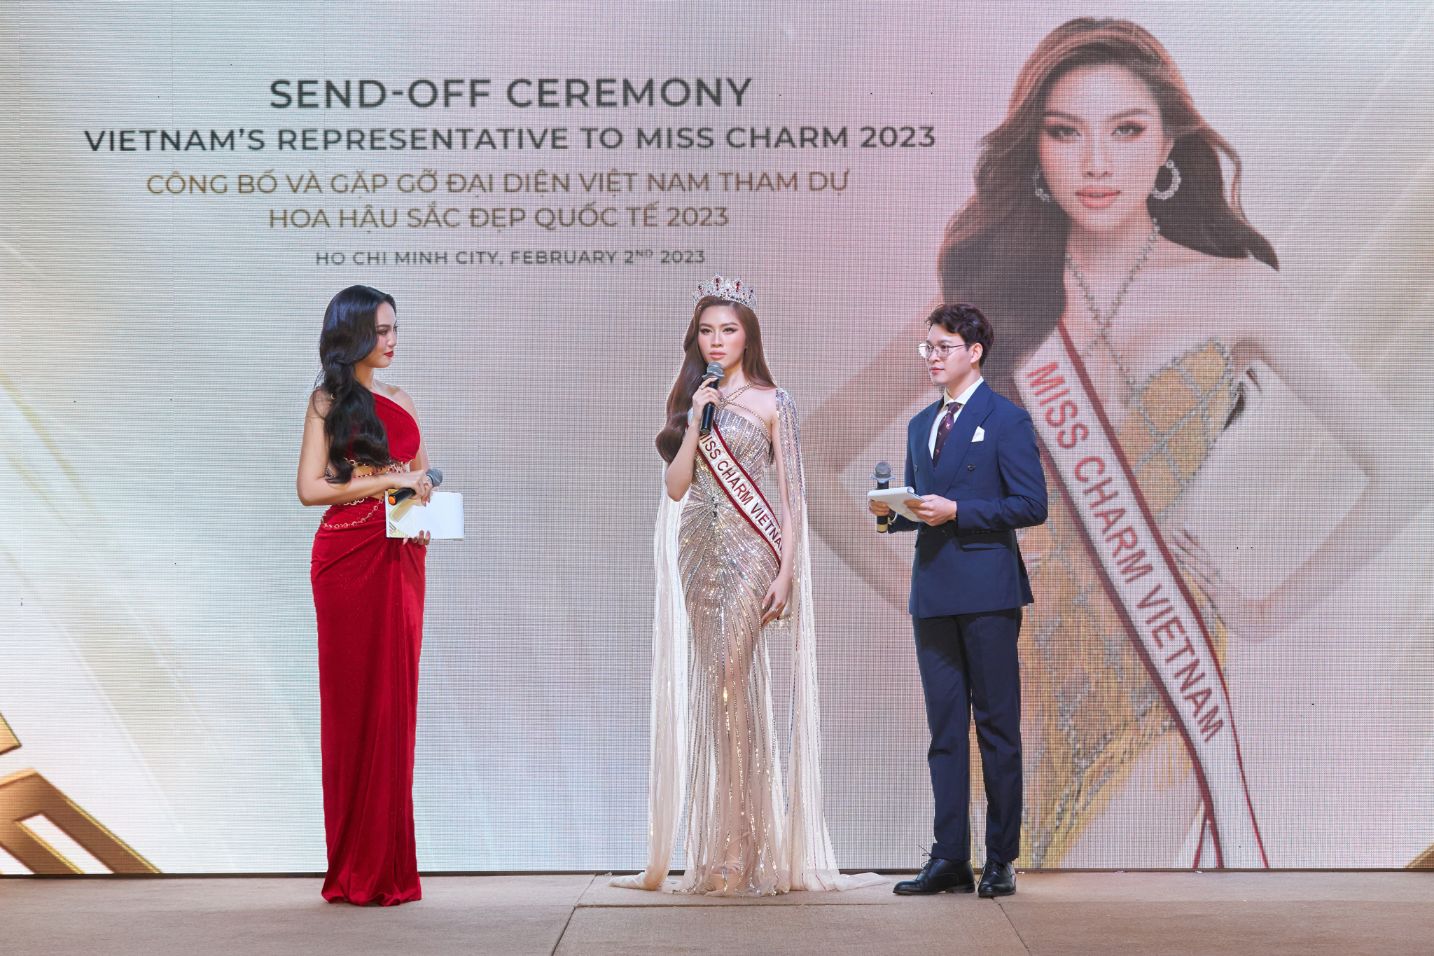 MISSCHARMVIETNAM SENDOFF 17 Thanh Thanh Huyền mang Bánh tráng đến Miss Charm 2023